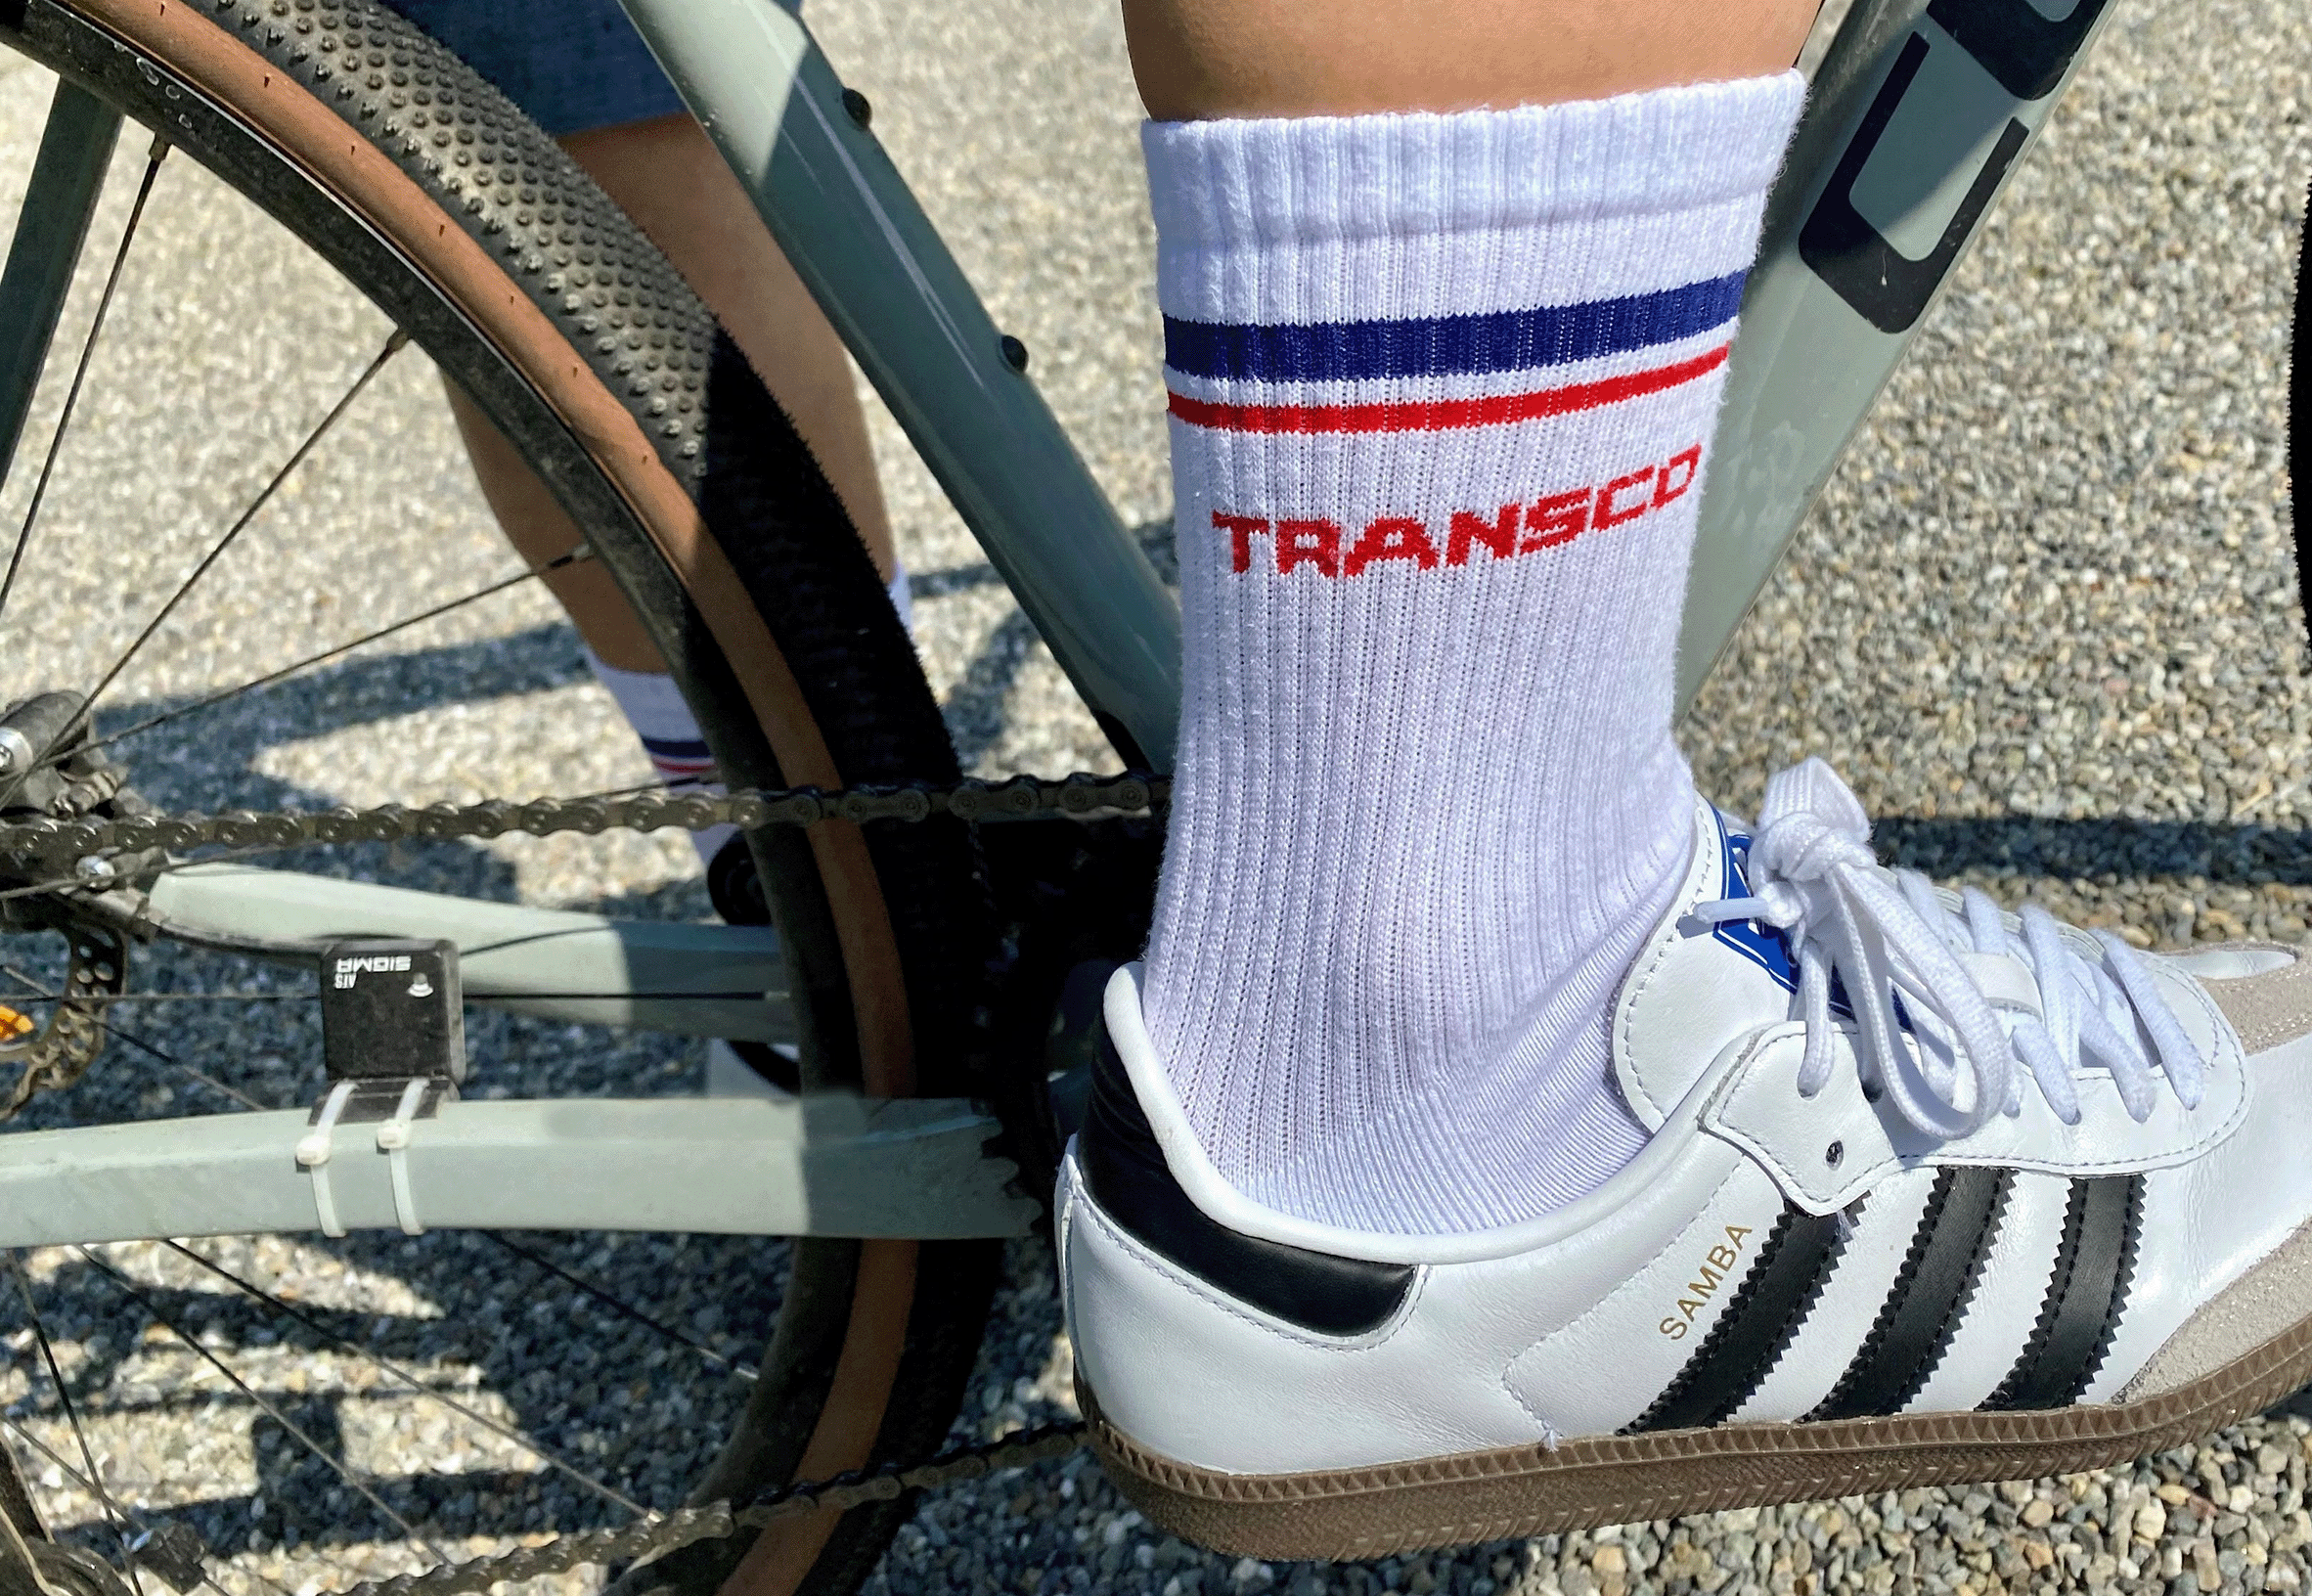 Fahrradfahrer trägt Transco Socken